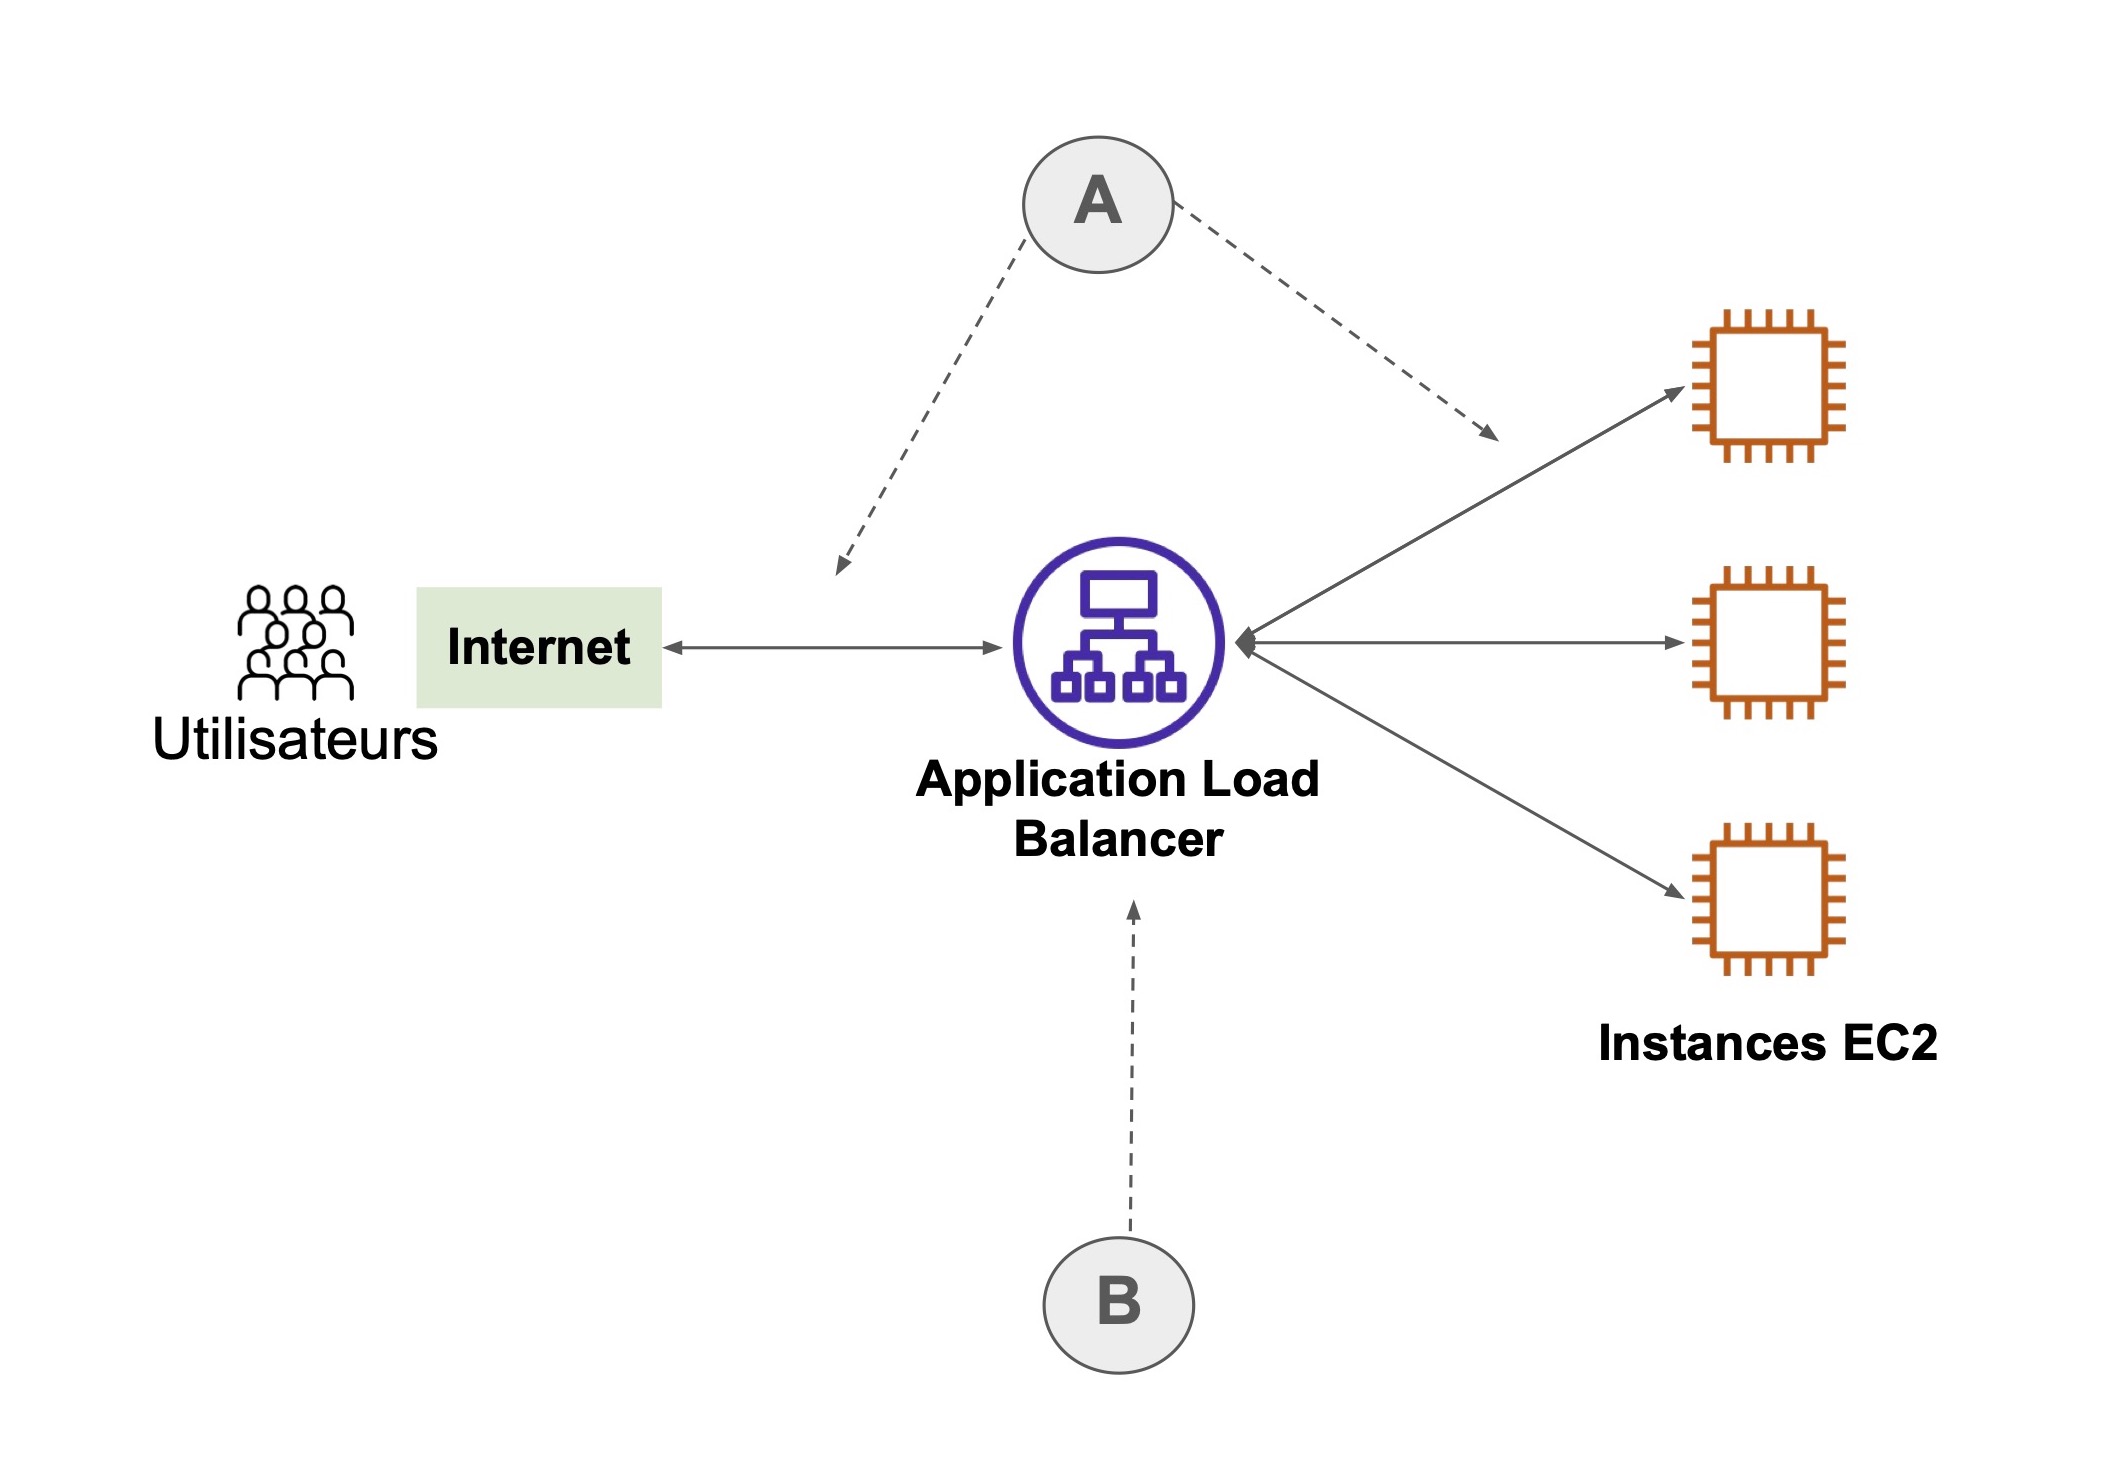 Schéma de fonctionnement d'un Application Load Balancer : - À gauche, internet / les utilisateurs  - Au milieu : Application Load Balancer  - À droite, instances EC2. Les 3 éléments sont reliés par des flèches horizontales.